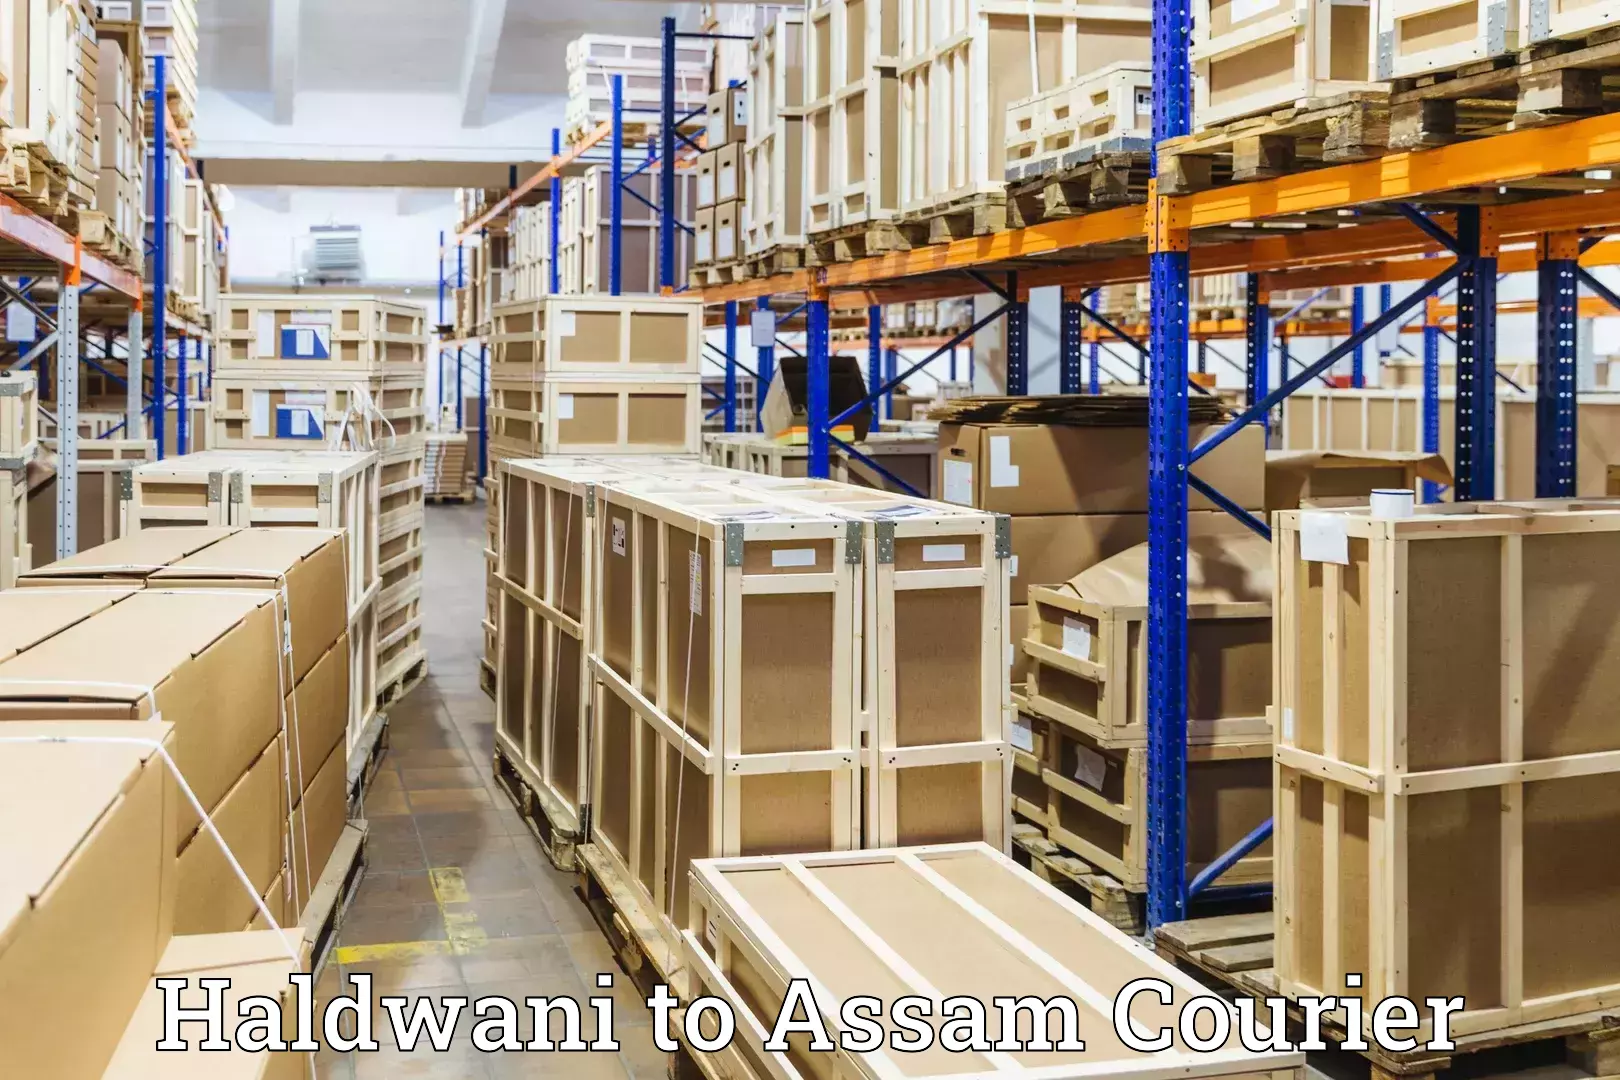 Luggage transit service Haldwani to Assam